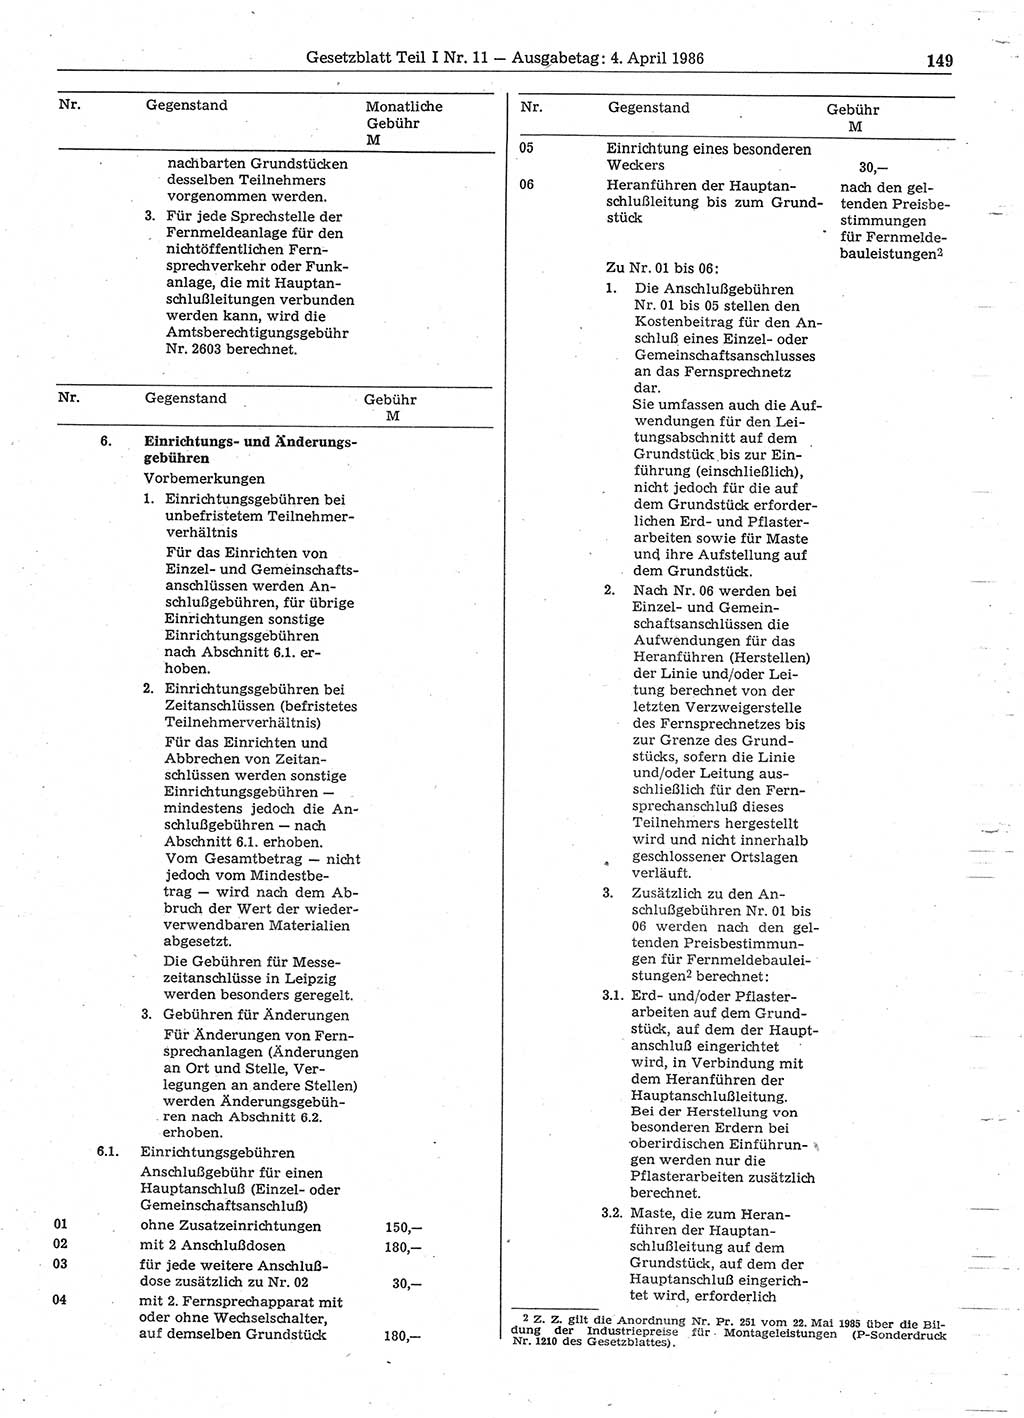 Gesetzblatt (GBl.) der Deutschen Demokratischen Republik (DDR) Teil Ⅰ 1986, Seite 149 (GBl. DDR Ⅰ 1986, S. 149)